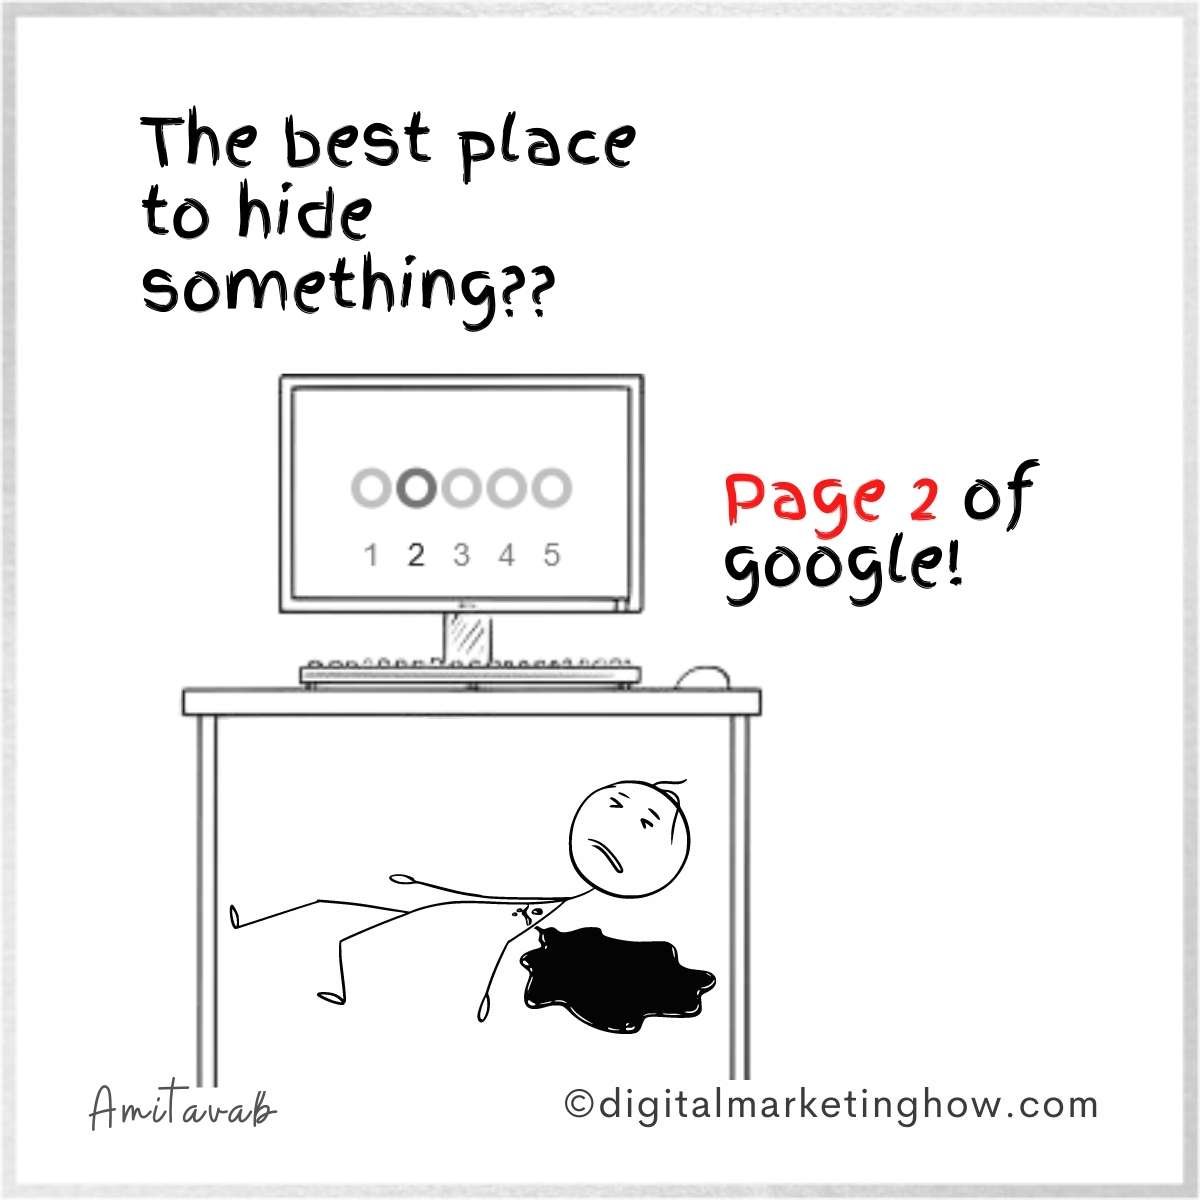 digital marketing joke - seo ranking joke - page 2 of google